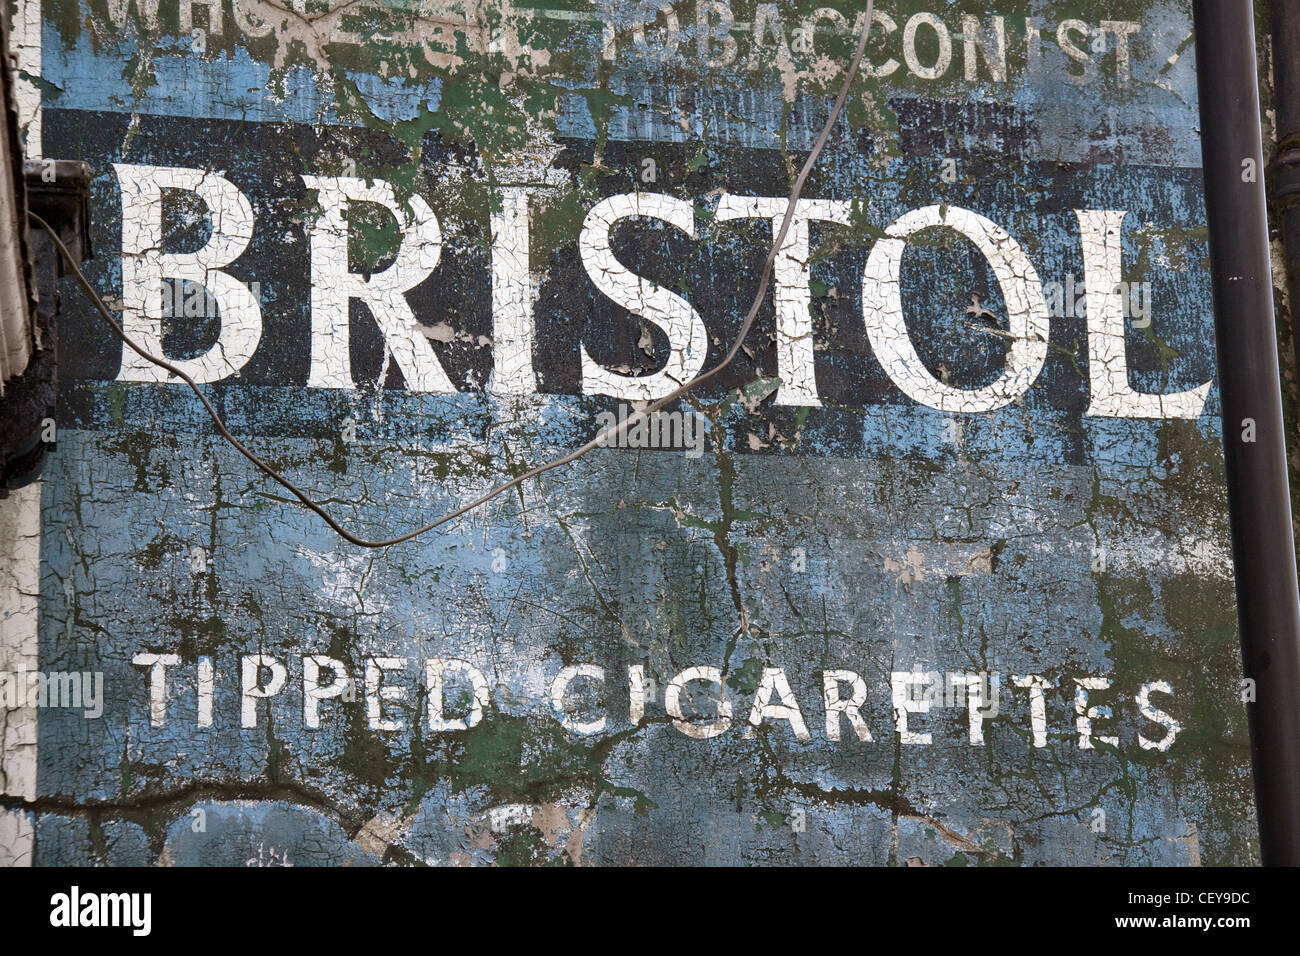 Les cigarettes à bout de Bristol historique mur annonce de Witton Street, Northwich, Cheshire et de l'Ouest Chester , Angleterre CW9 5QU Banque D'Images